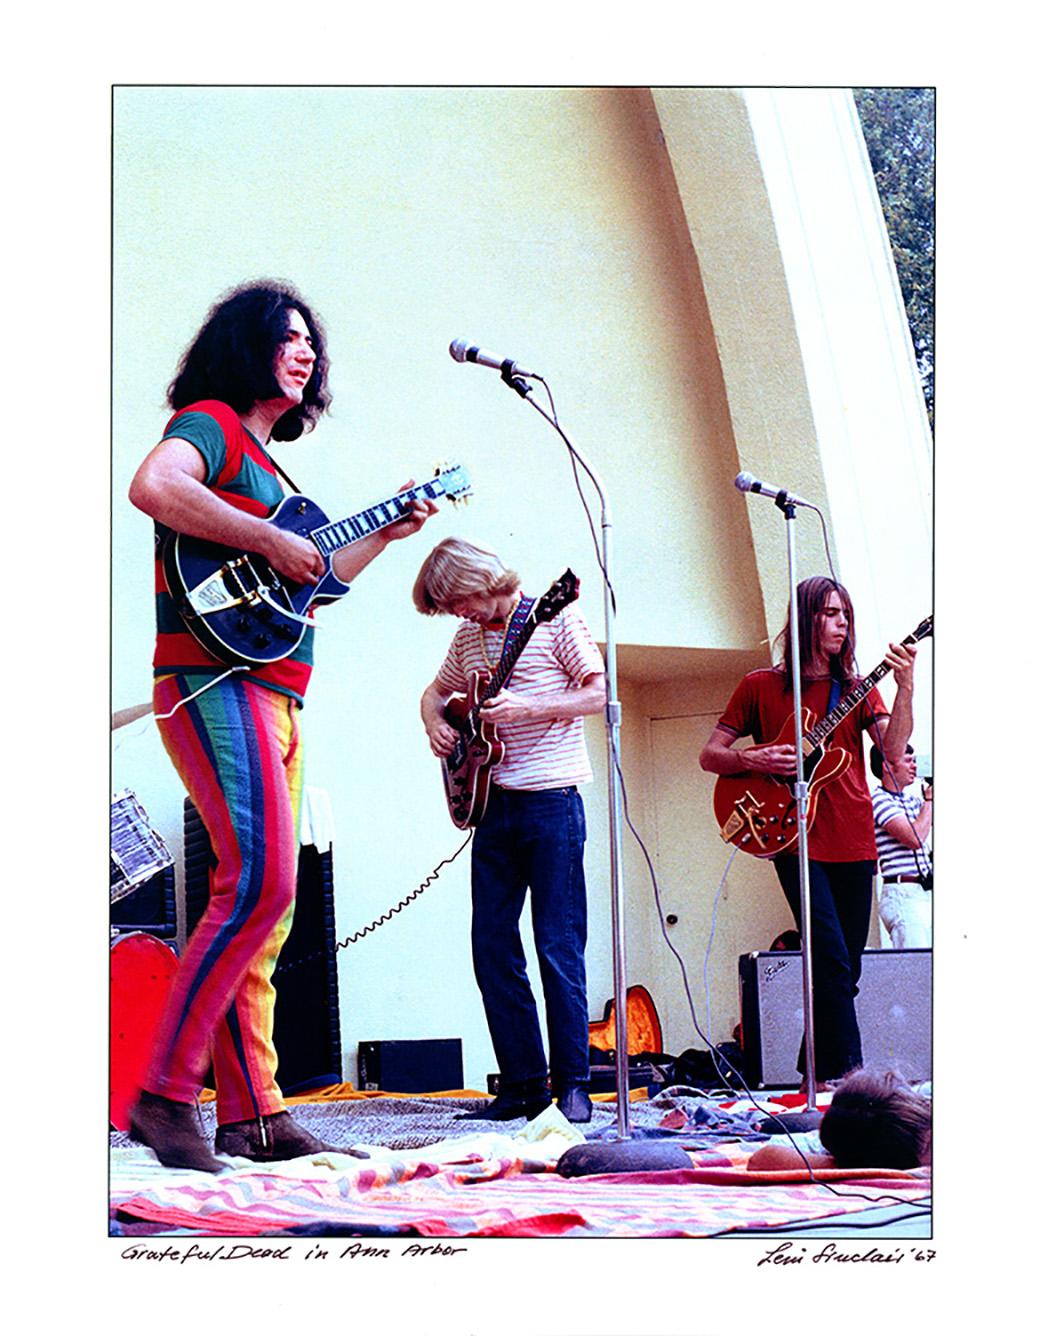 Grateful Dead-Fotografie von Ann Arbor, Michigan 1968 von Jerry Garcia